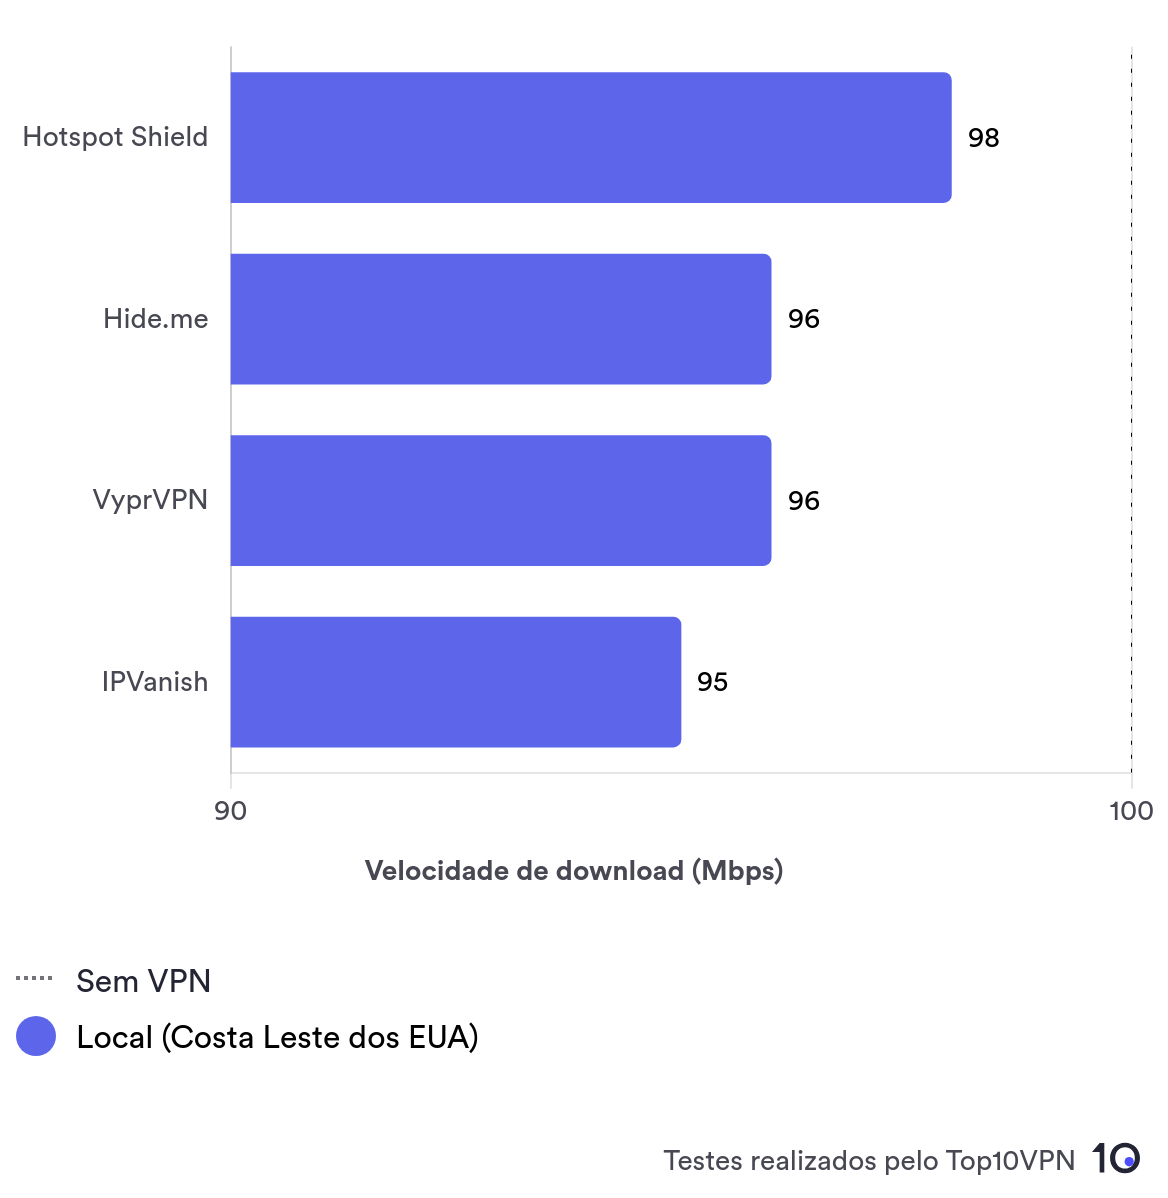 Gráfico de barra comparativo com as velocidades locais médias do Hotspot Shield, da Hide.me, da VyprVPN e da IPVanish. 